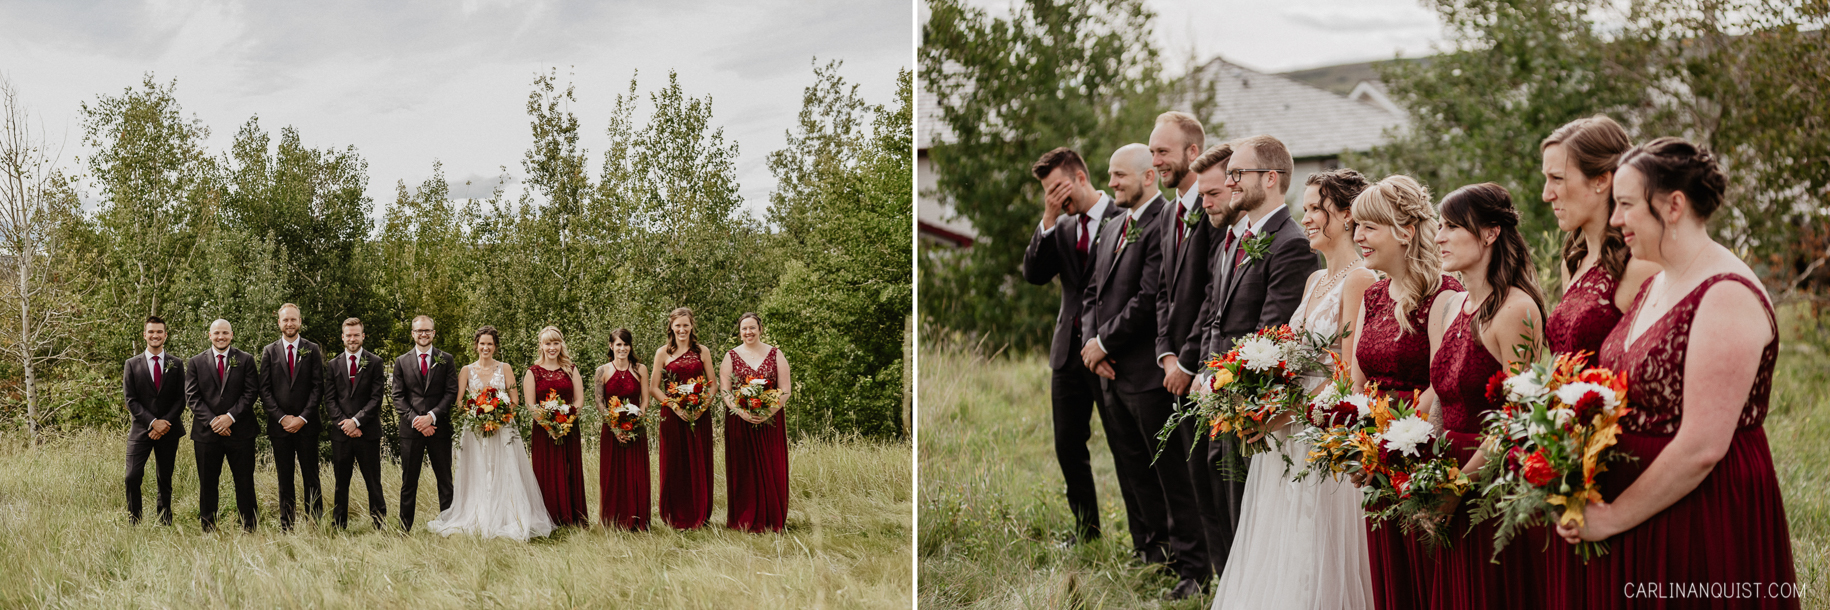 Wedding Party | Calgary Wedding Photographers